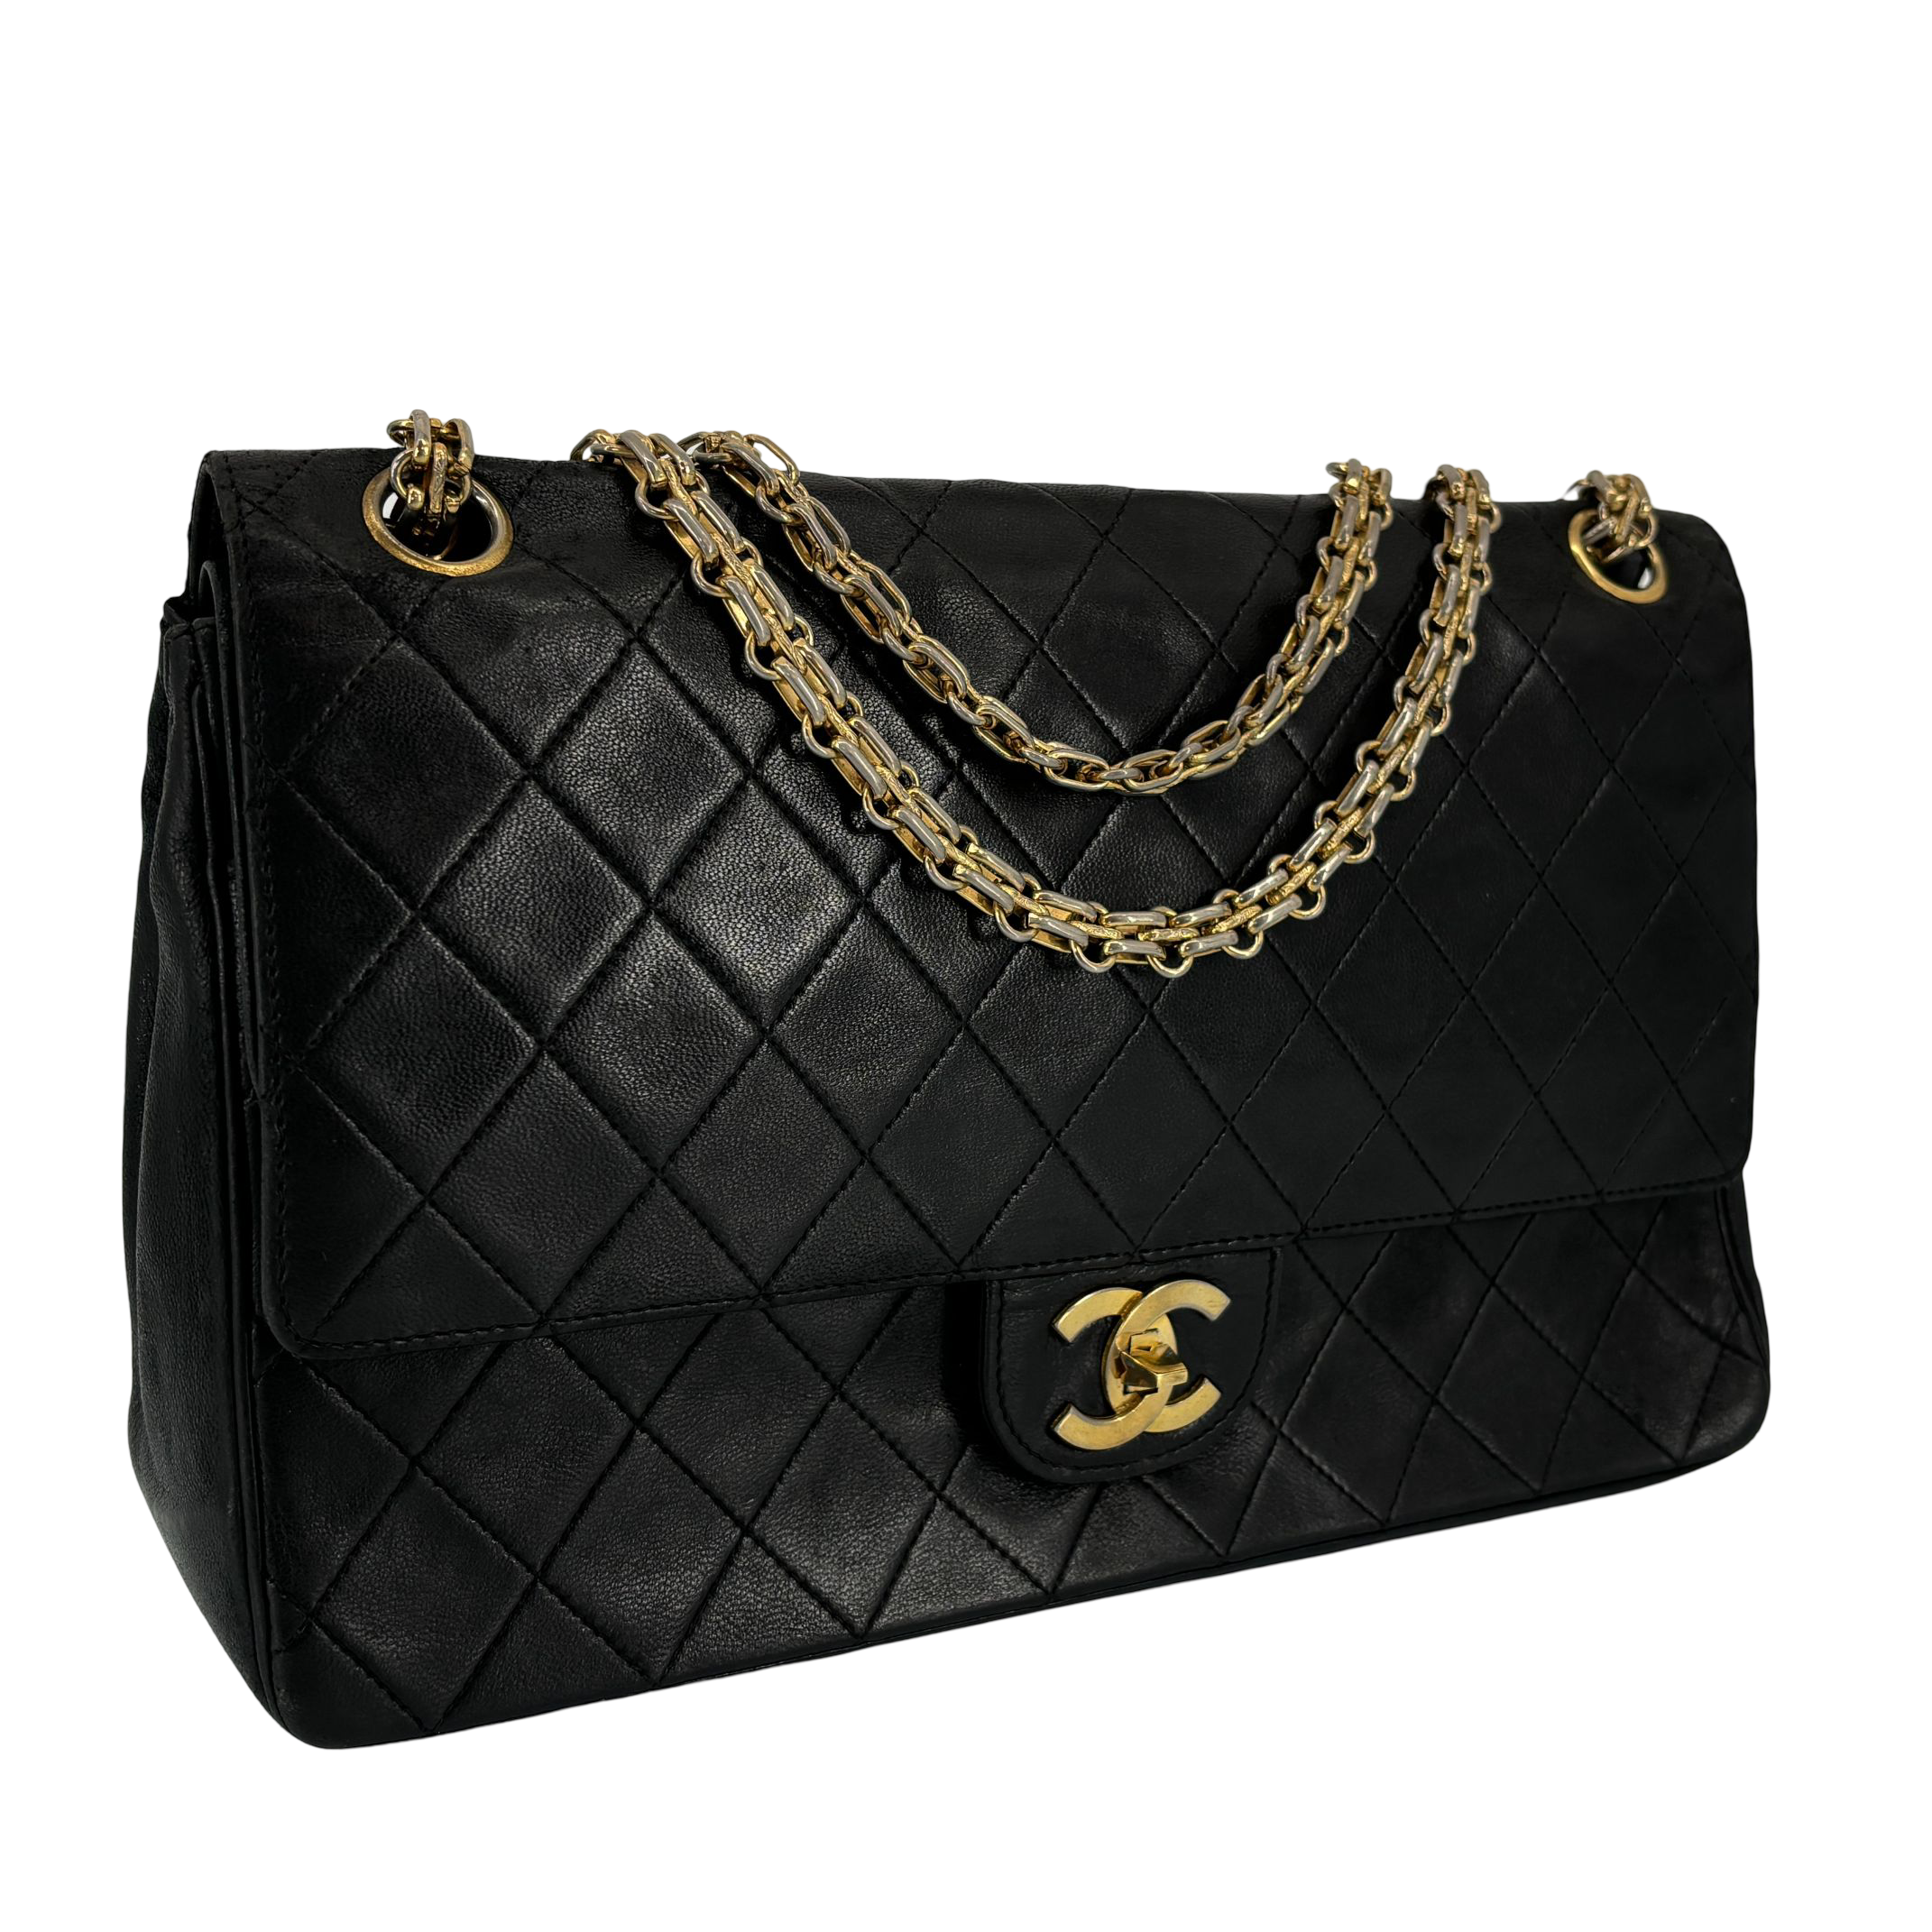 Chanel Timeless / Classique Double Flap Bag Black Matelassé Leather Medium